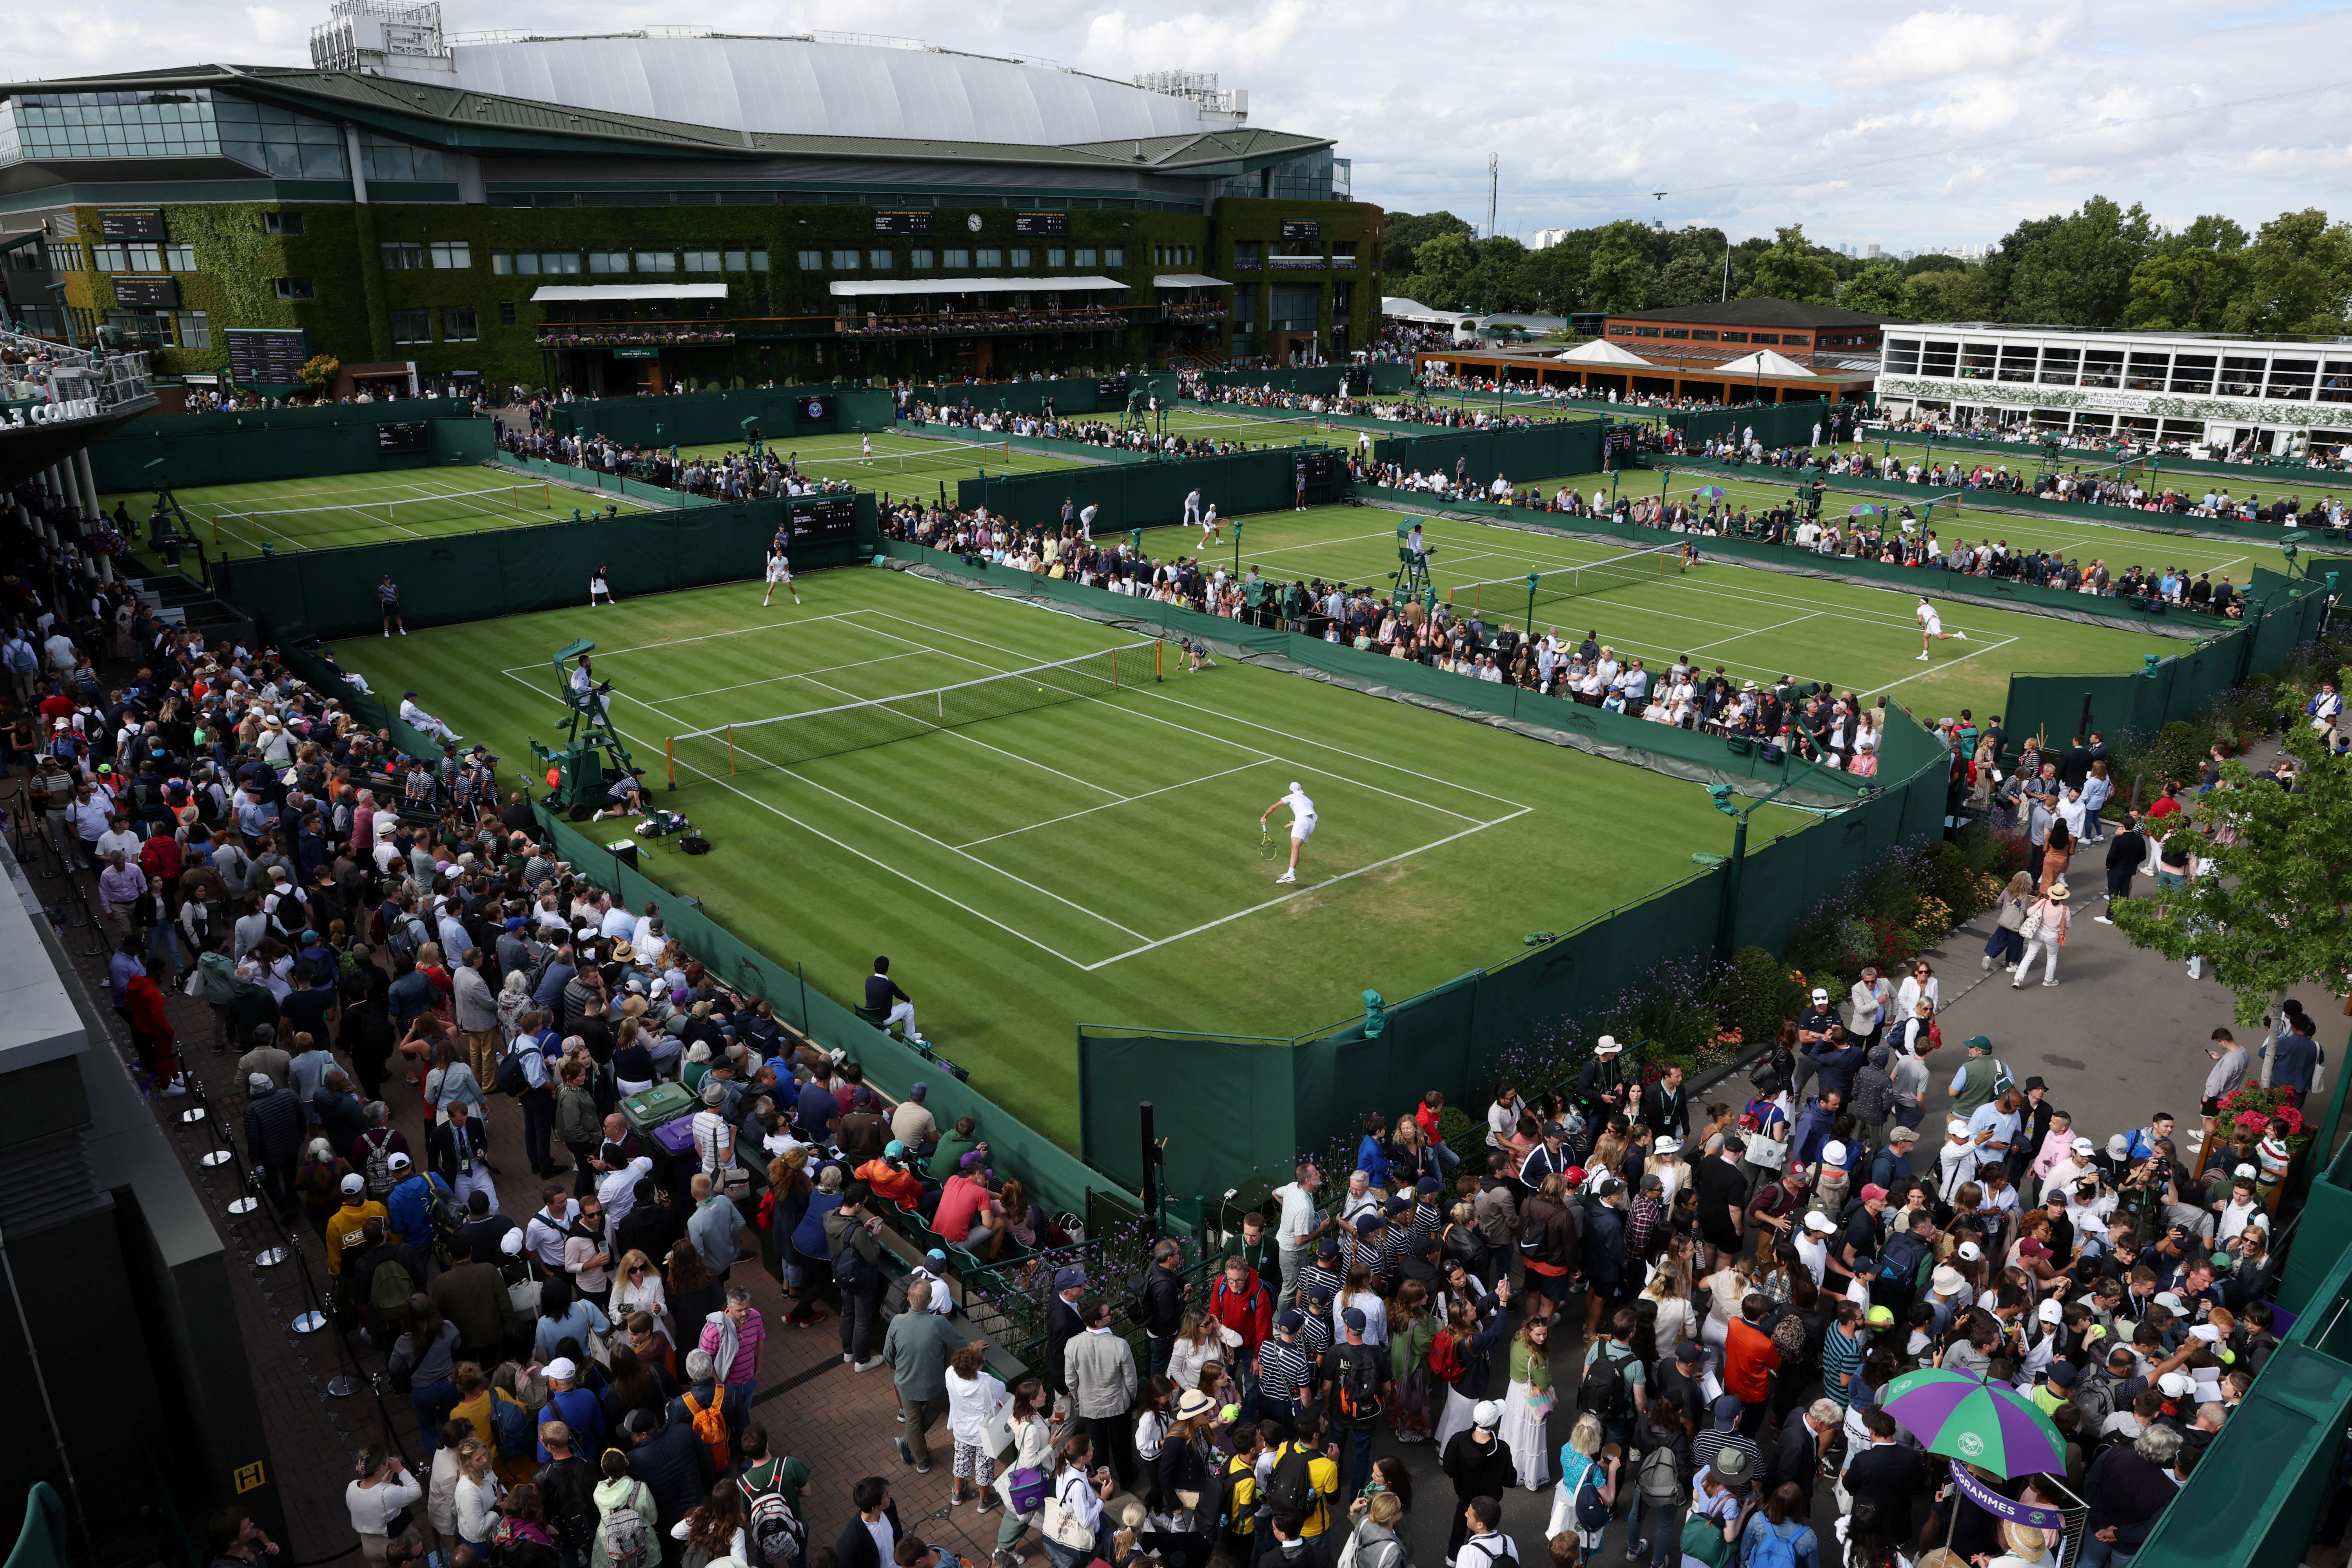 Wimbledon suffers expansion plan blow after council refuses permission Reuters